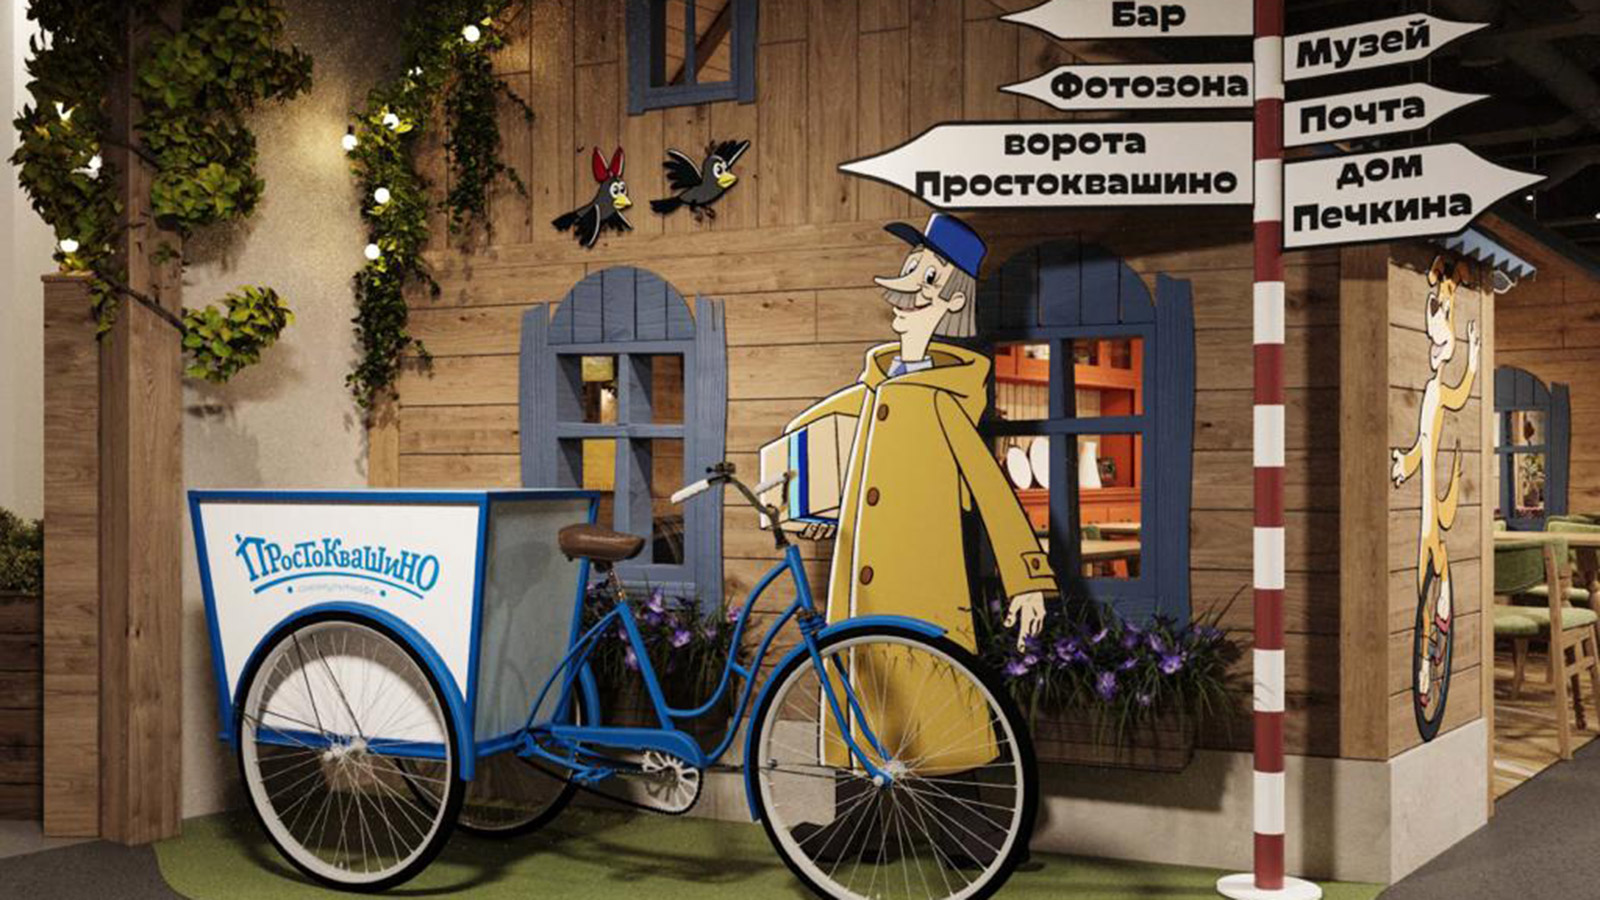 В Домодедово появятся «Союзмульткафе» и игровая зона «Простоквашино»